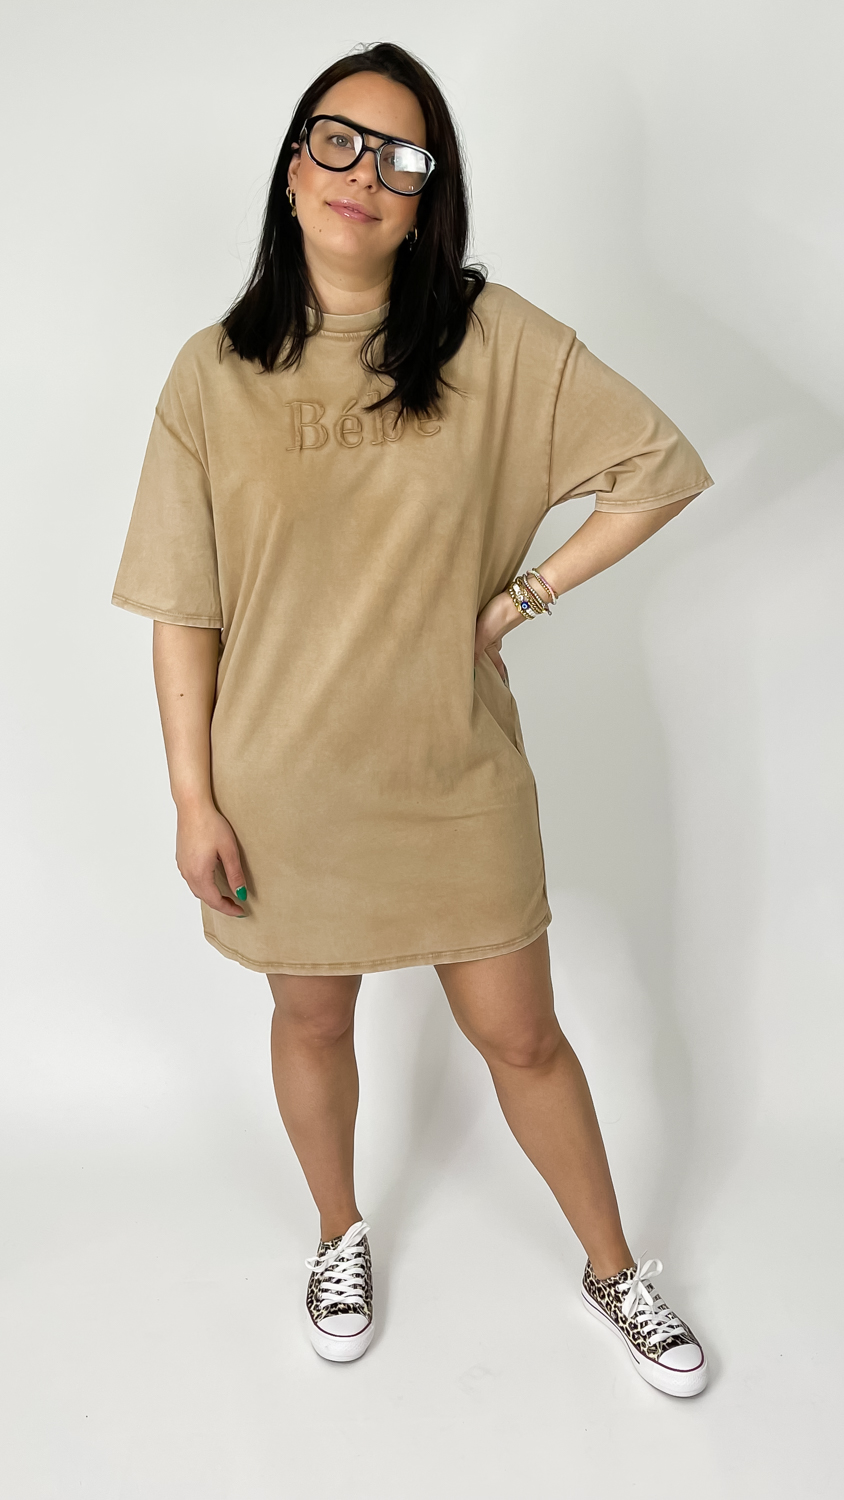 Superweiches Oversized T-Shirt Kleid, Miina Fashion Onlineshop